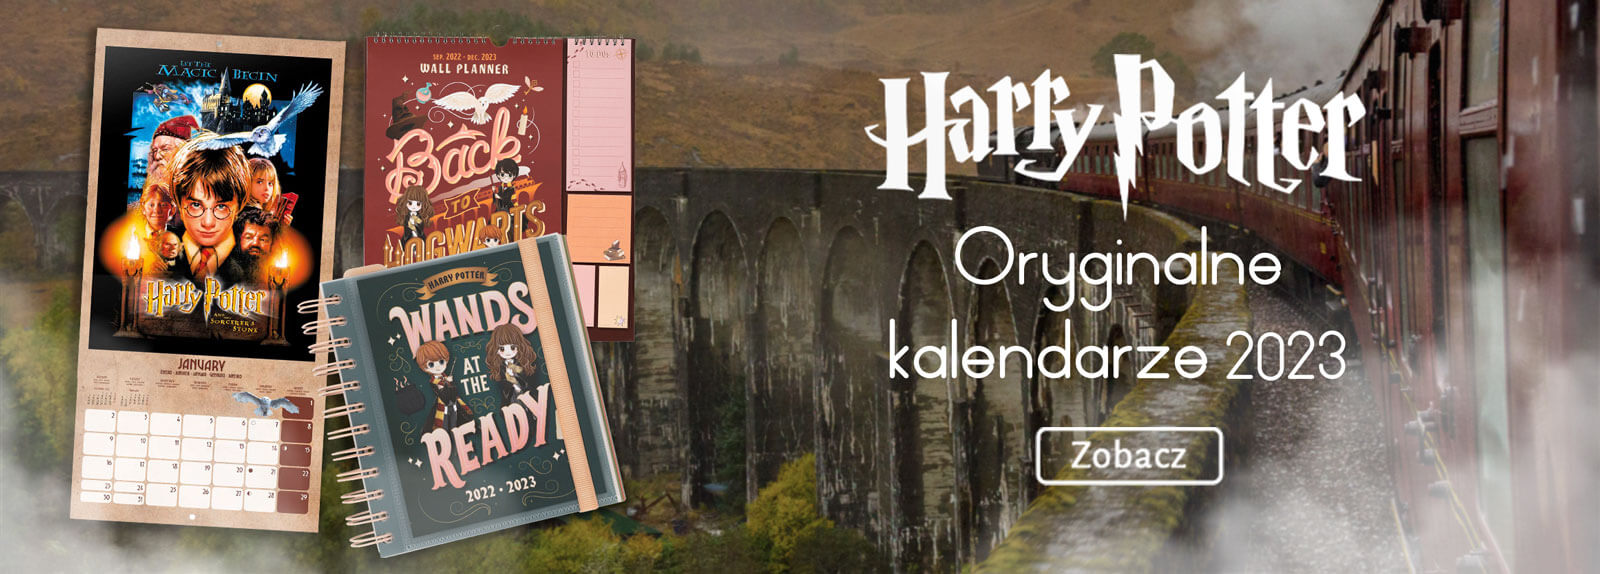 Kalendarze i dzienniki na 2023 rok dla fanów Harry Pottera